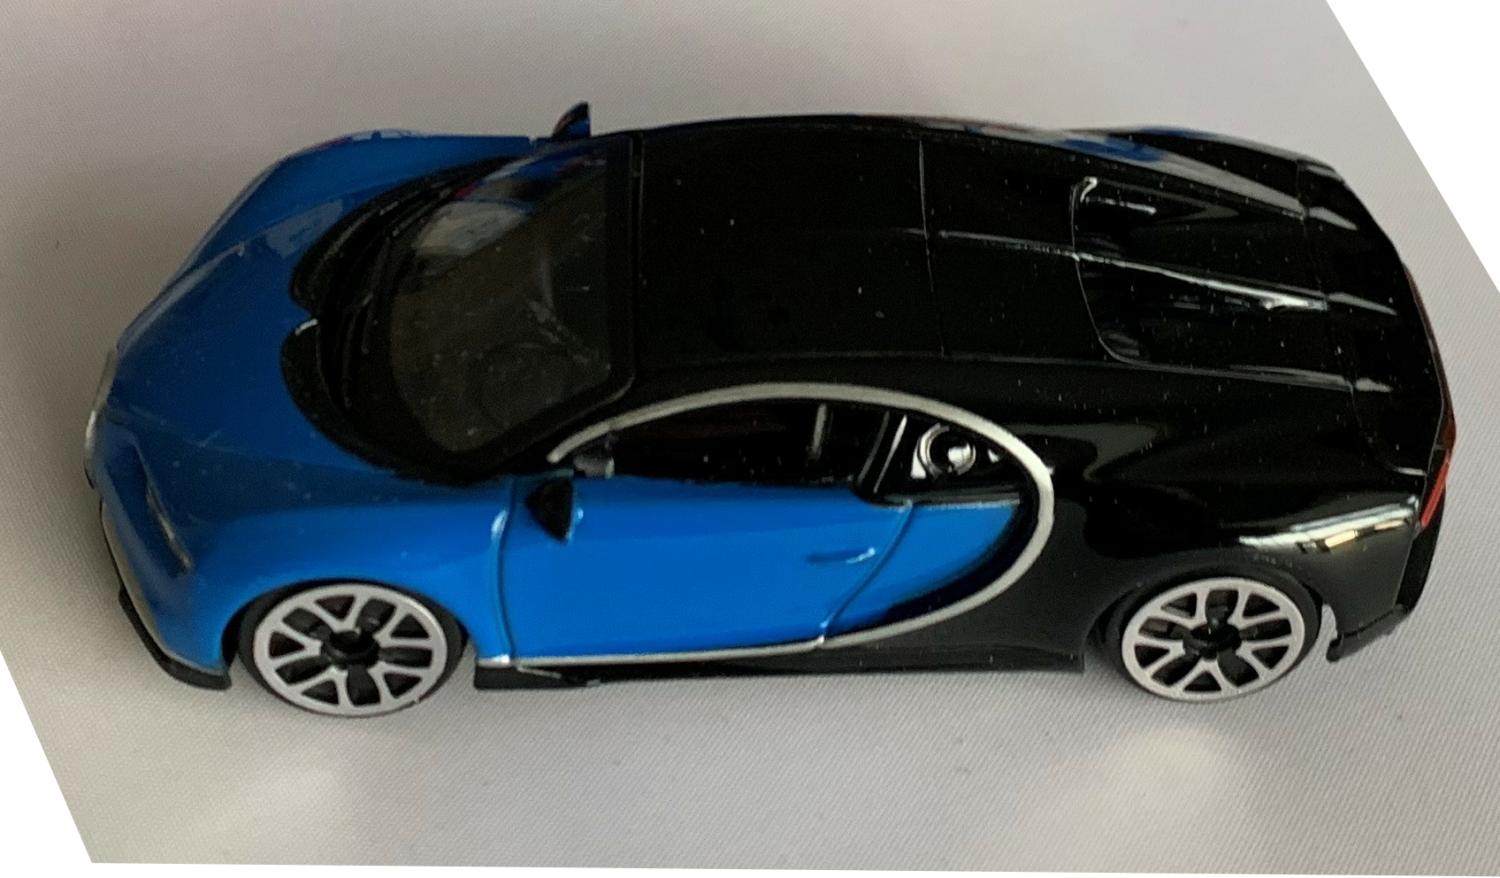 Bugatti Chiron in blue / black 1:43 scale model from bburago, streetfire